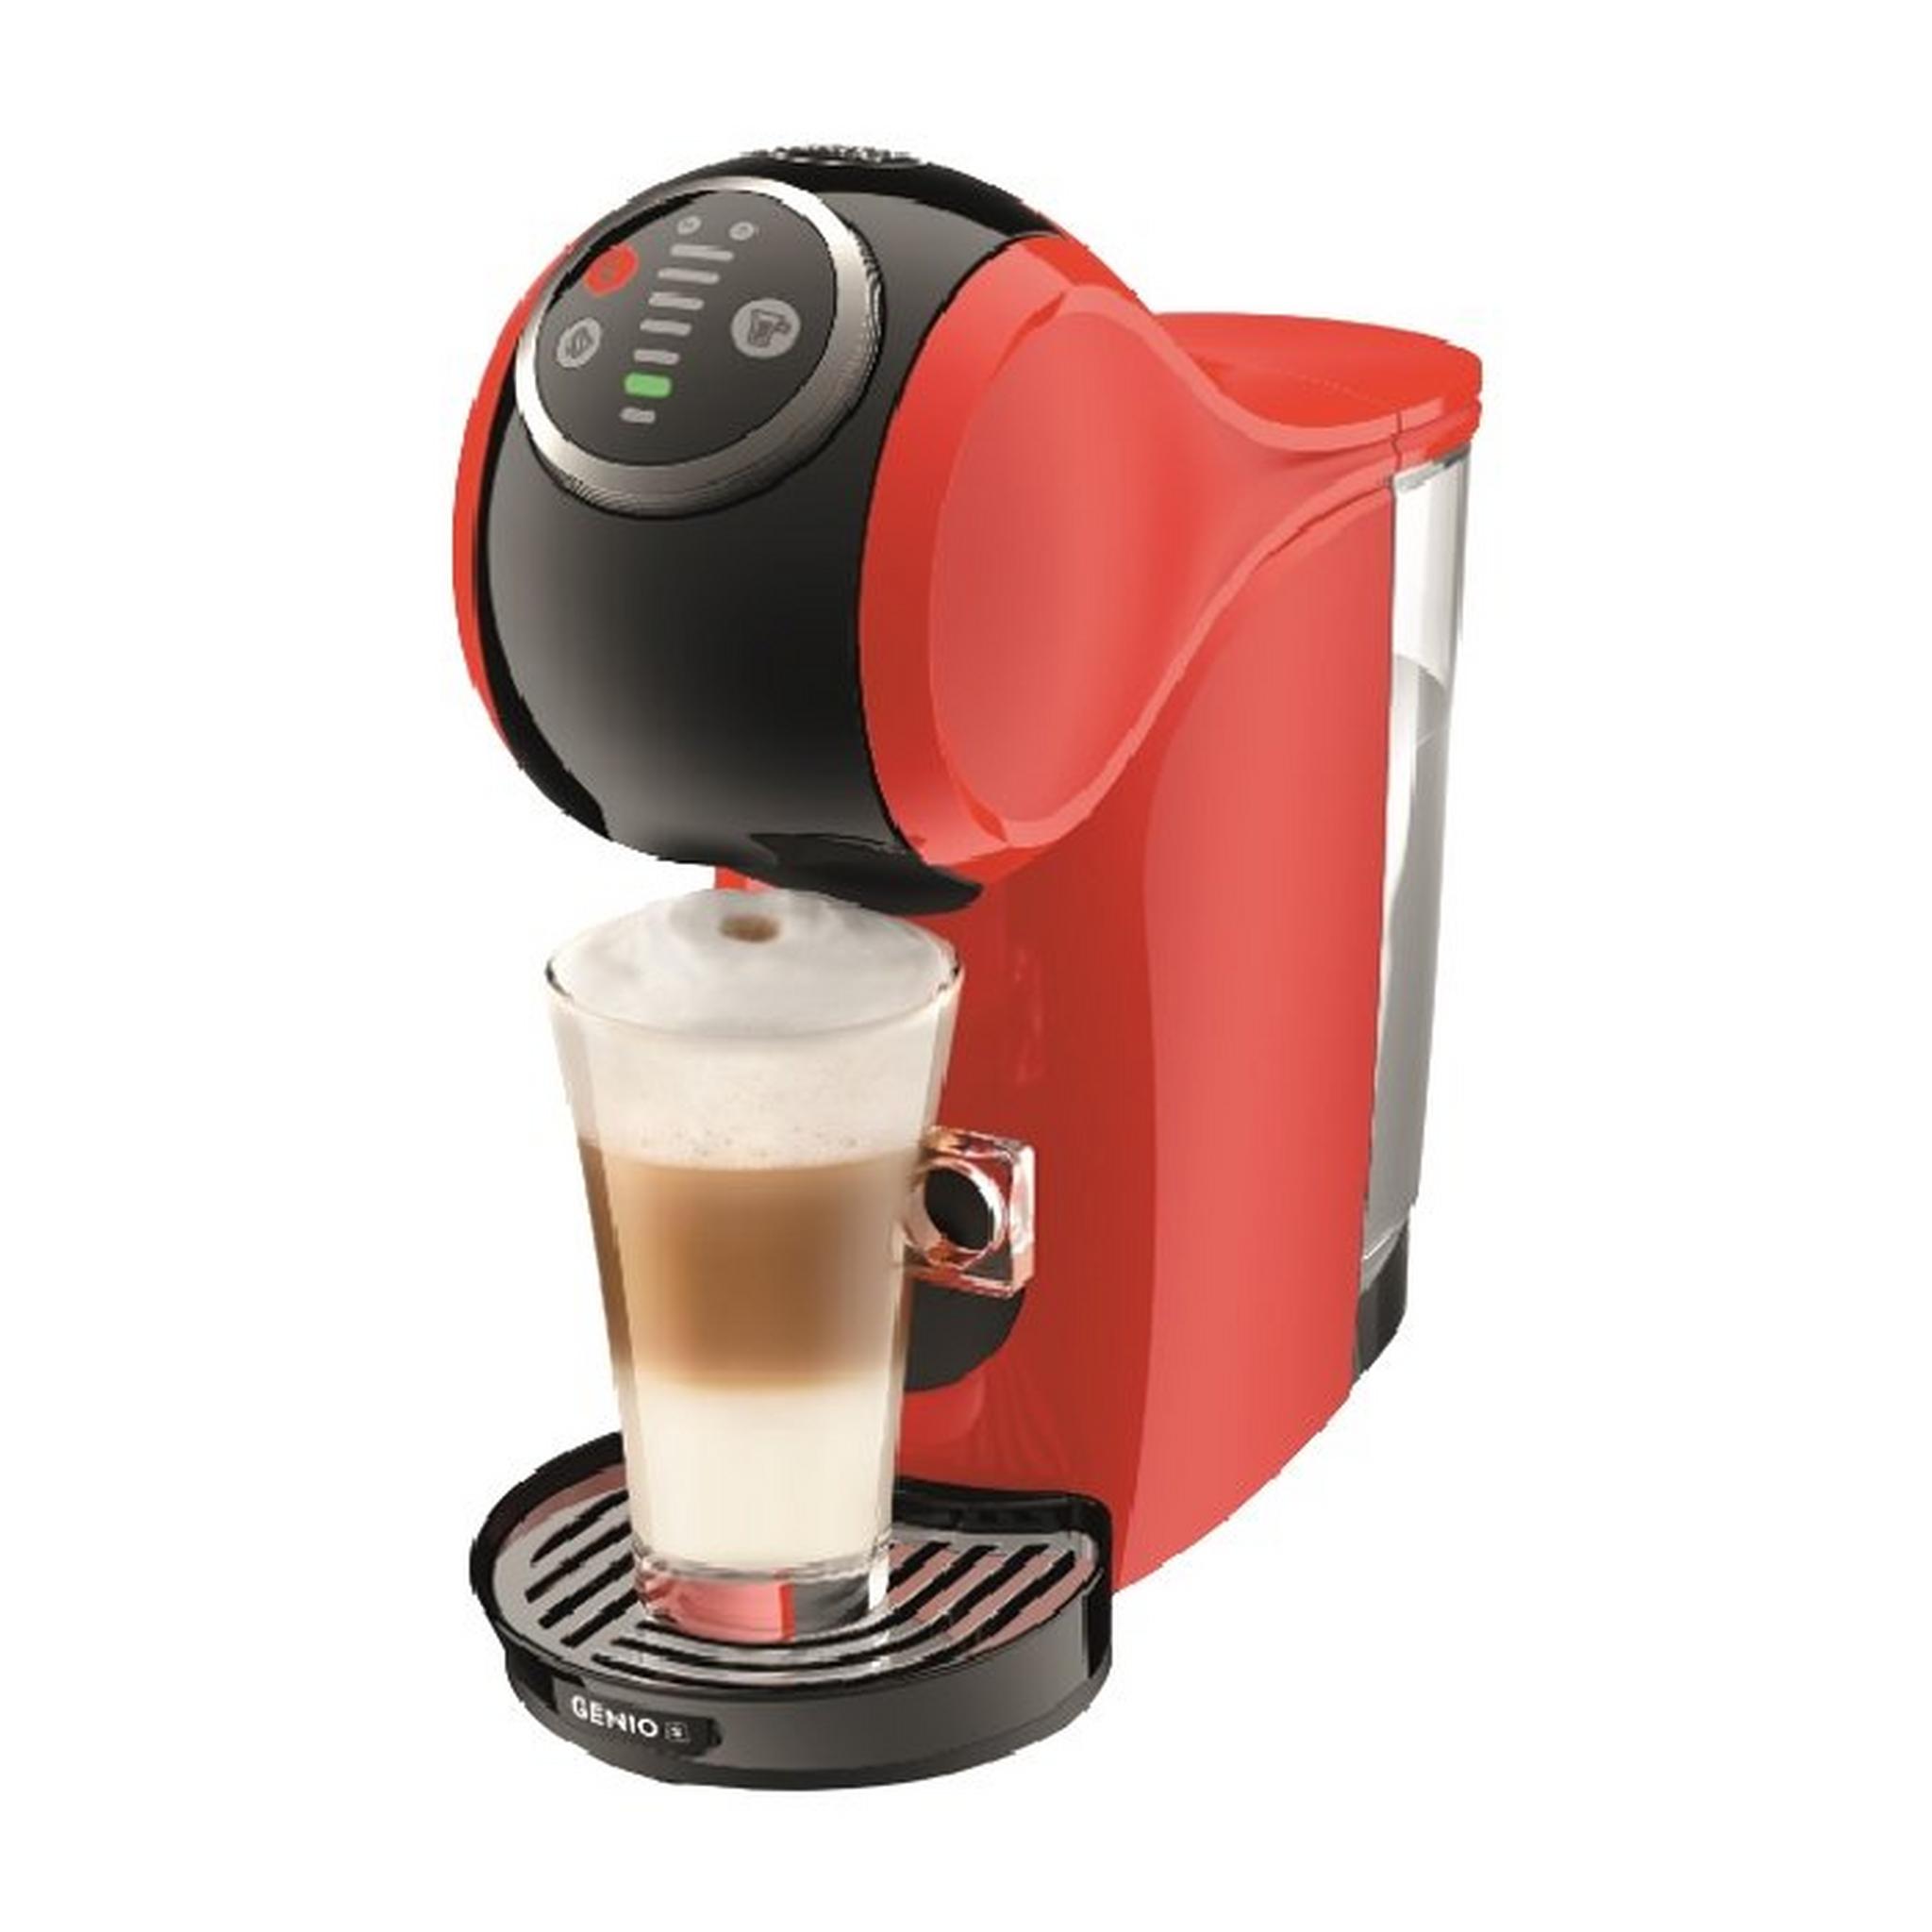 Dolce Gusto Nescafe Genio S Plus Coffee Maker - Red